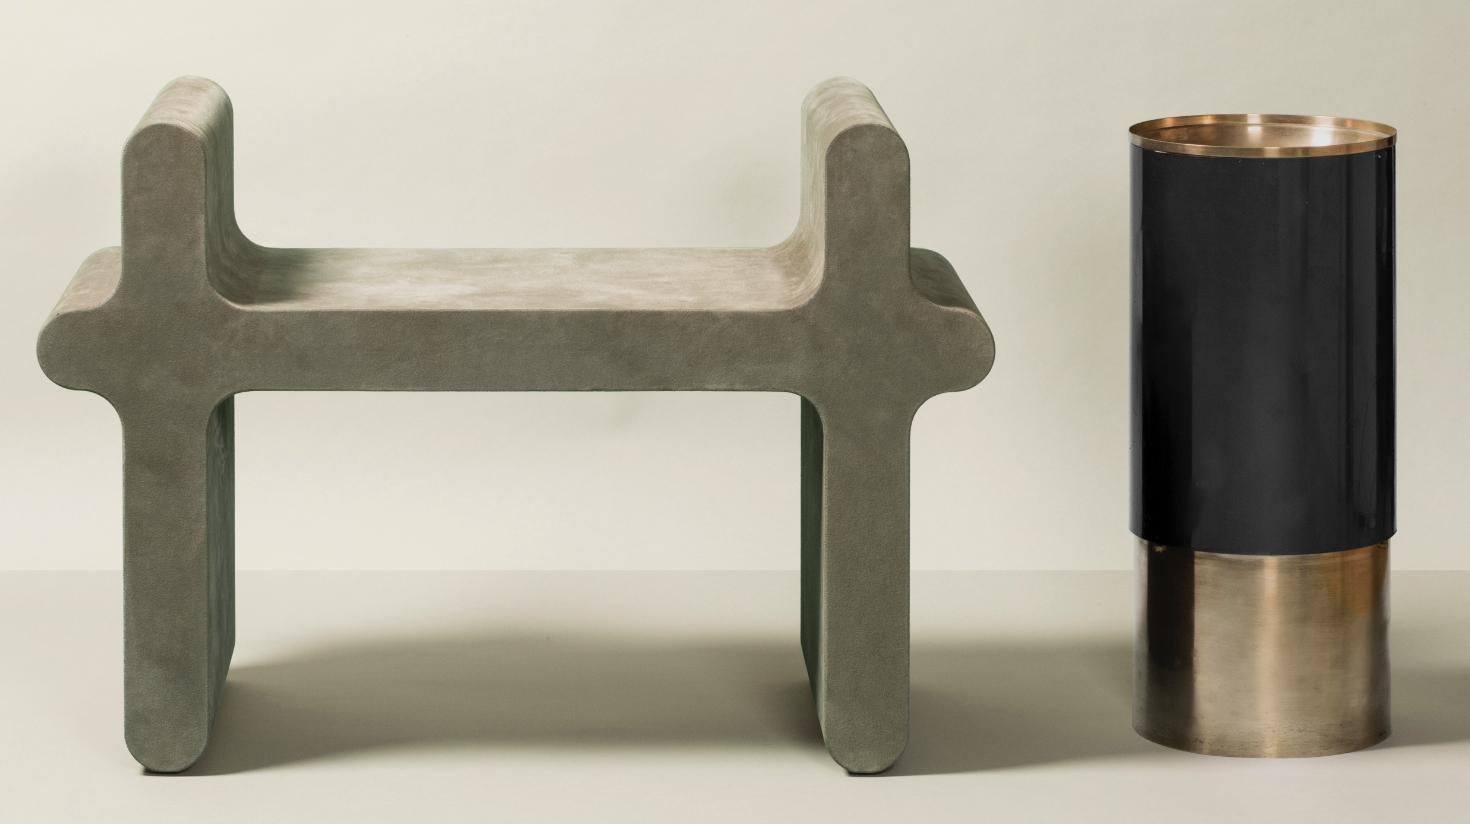 Moderner Hocker aus Wildleder - Ossicle N.1 von Francesco Balzano für Giobagnara.
Das auf dem Bild dargestellte Objekt hat folgende Ausführung: A69 Salbei Wildleder.

Als Teil einer einzigartigen und innovativen Serie mit monolithischen Sitzen,